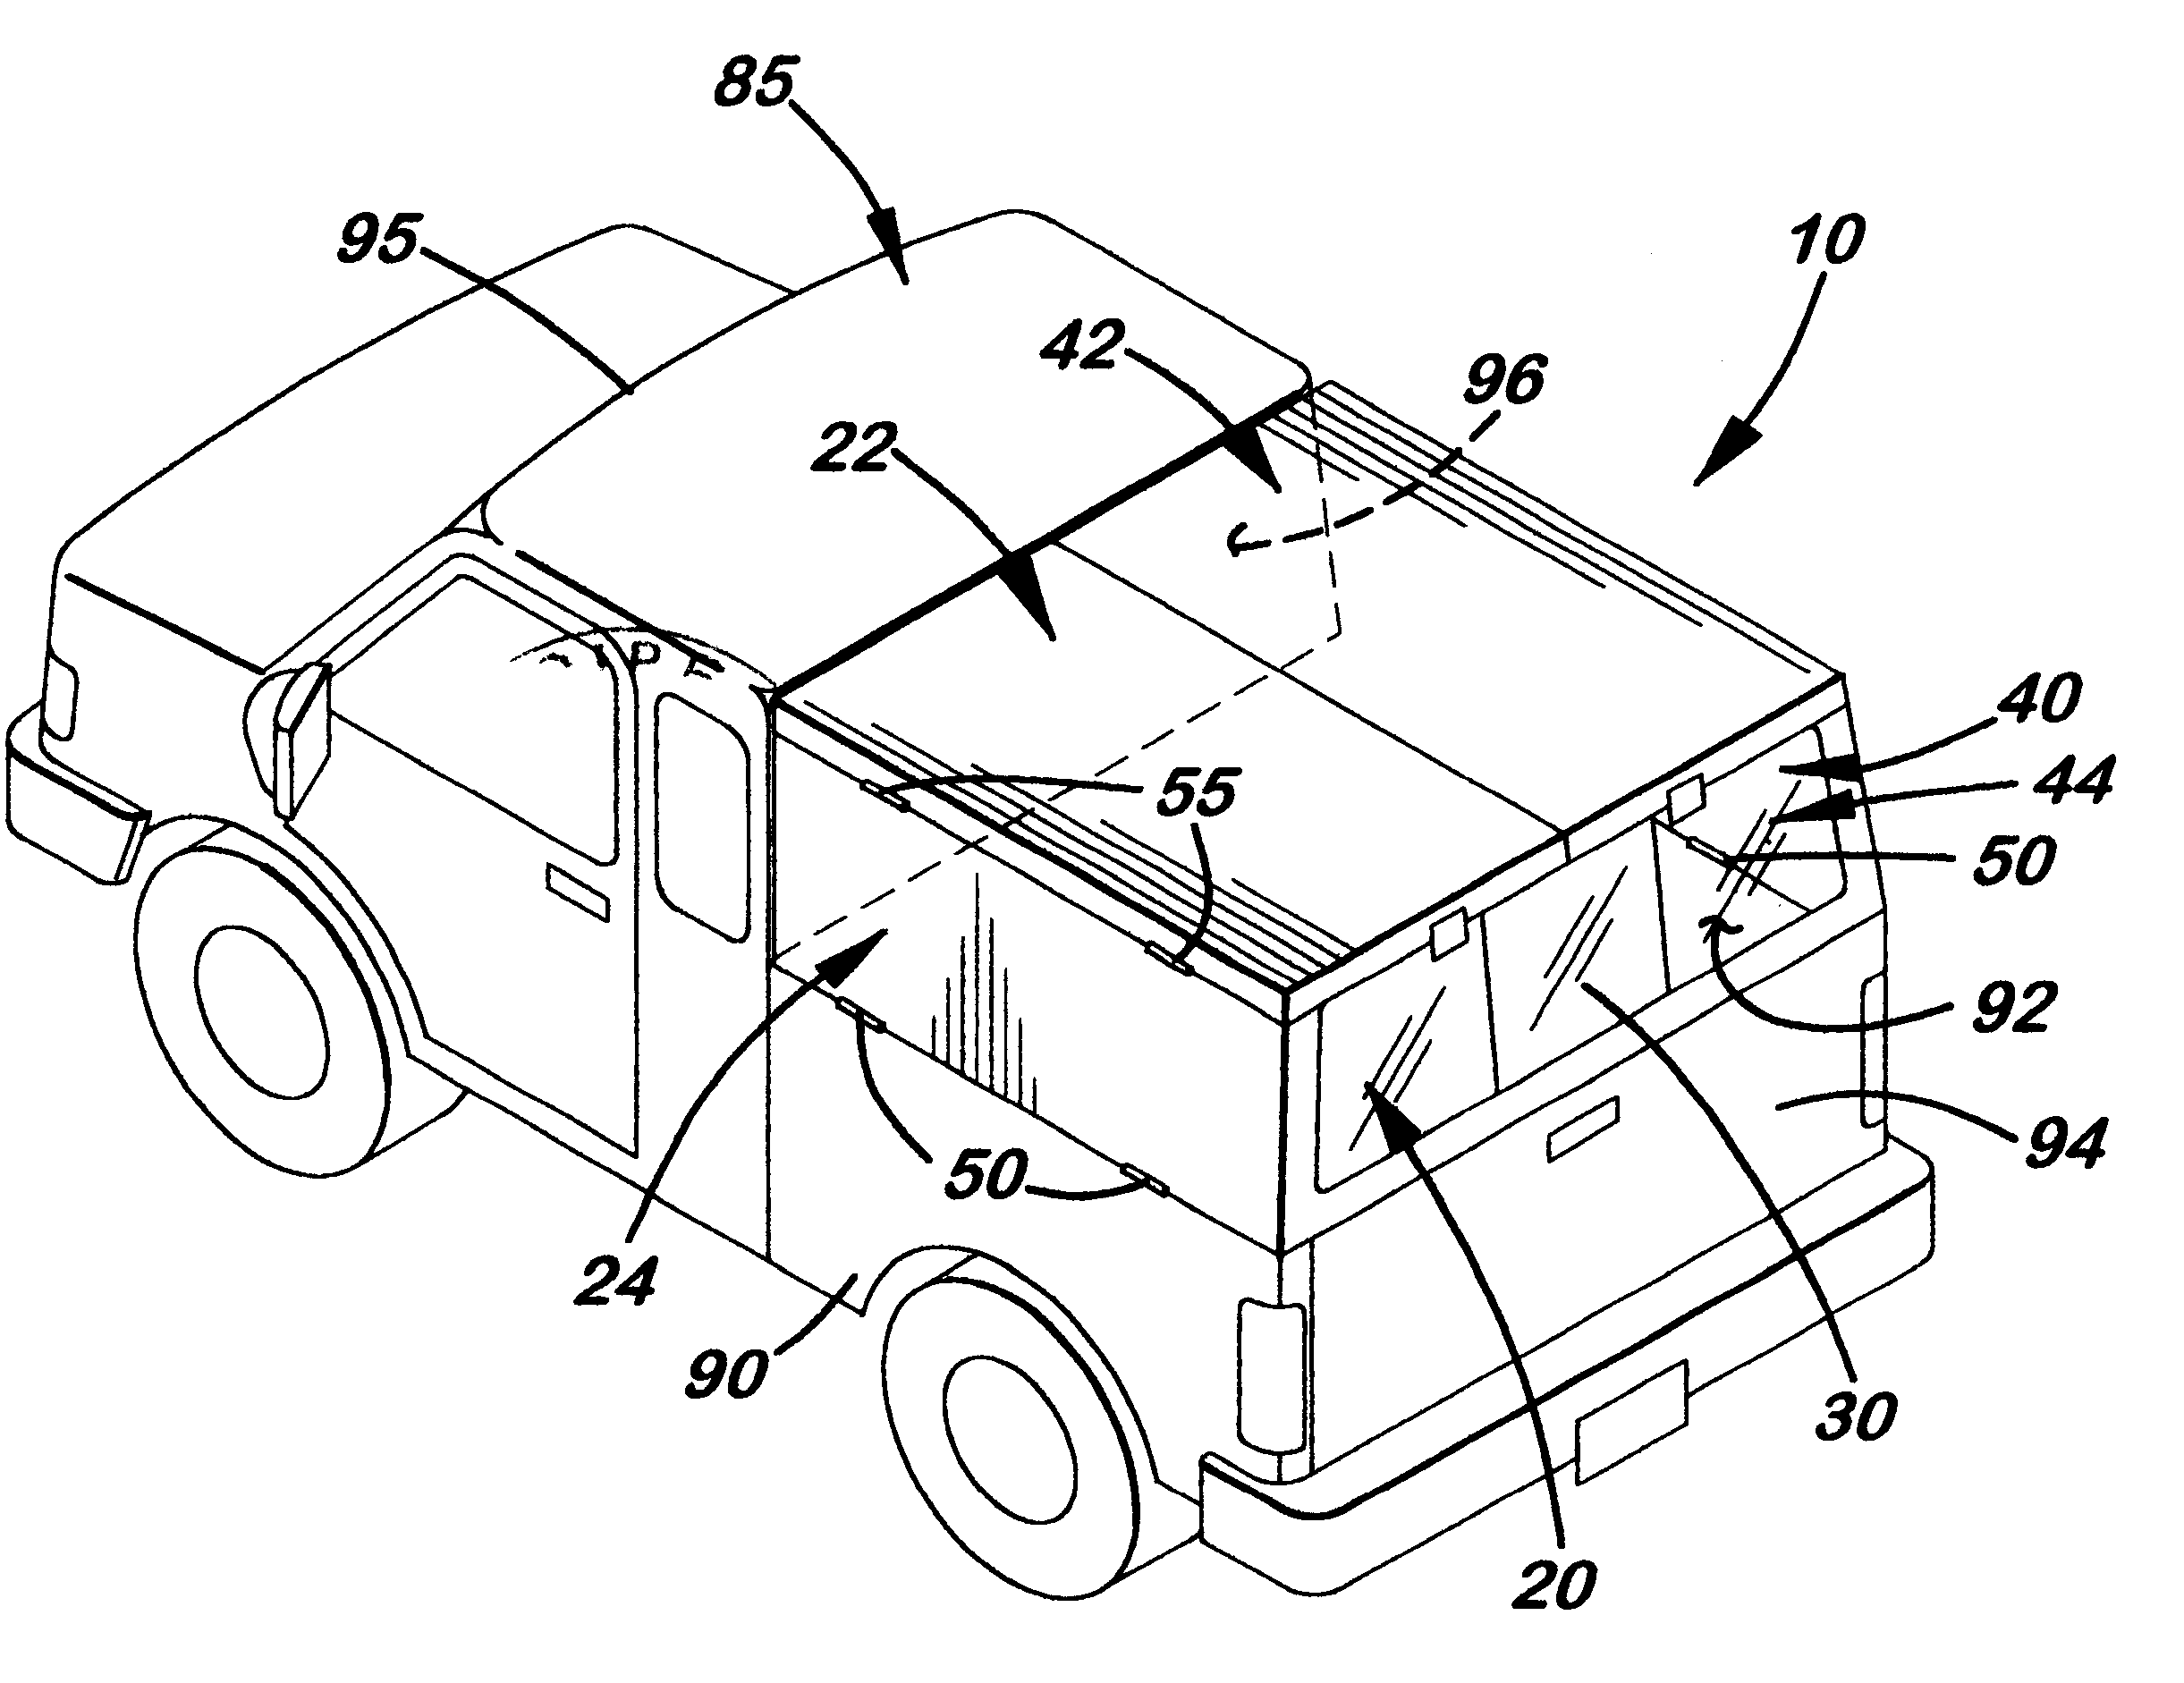 Motor vehicle foldable canopy